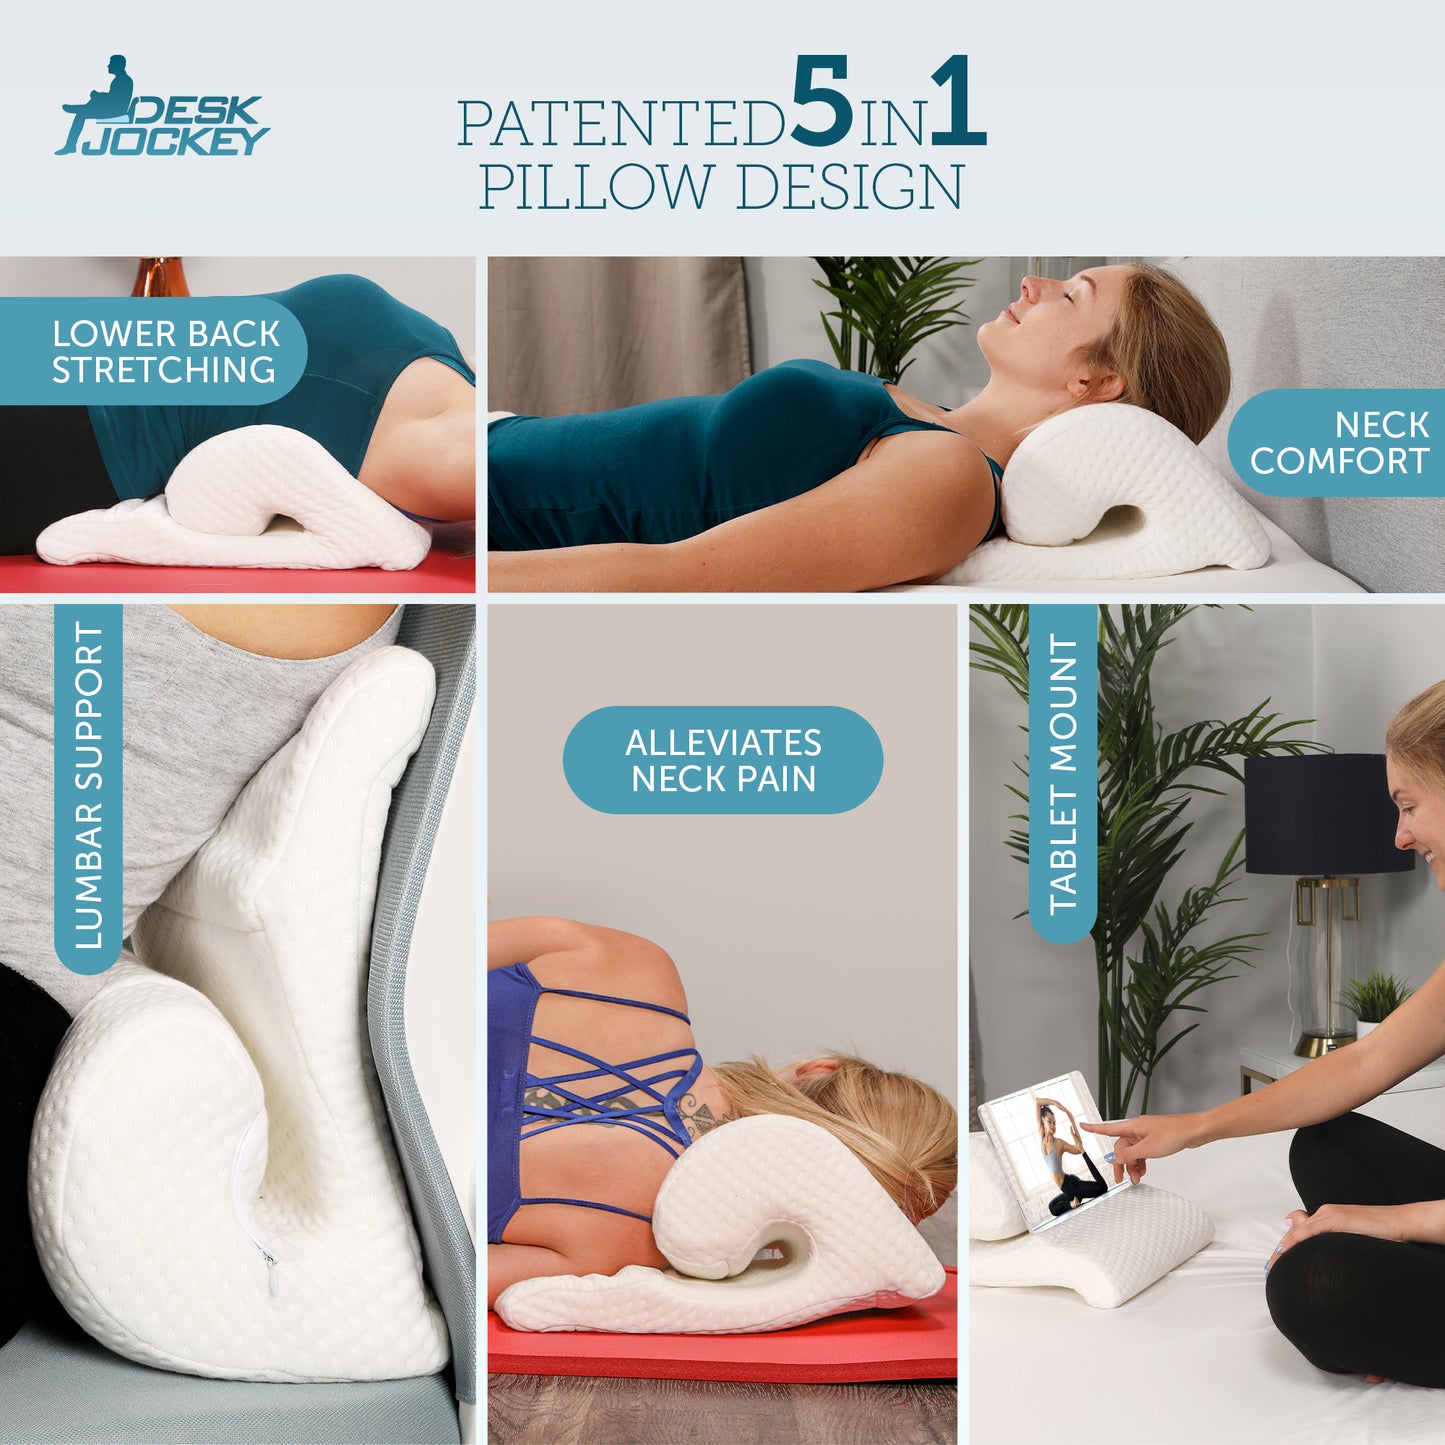 Desk Jockey's 5-in-1 Cervical Pillow for Neck Pain